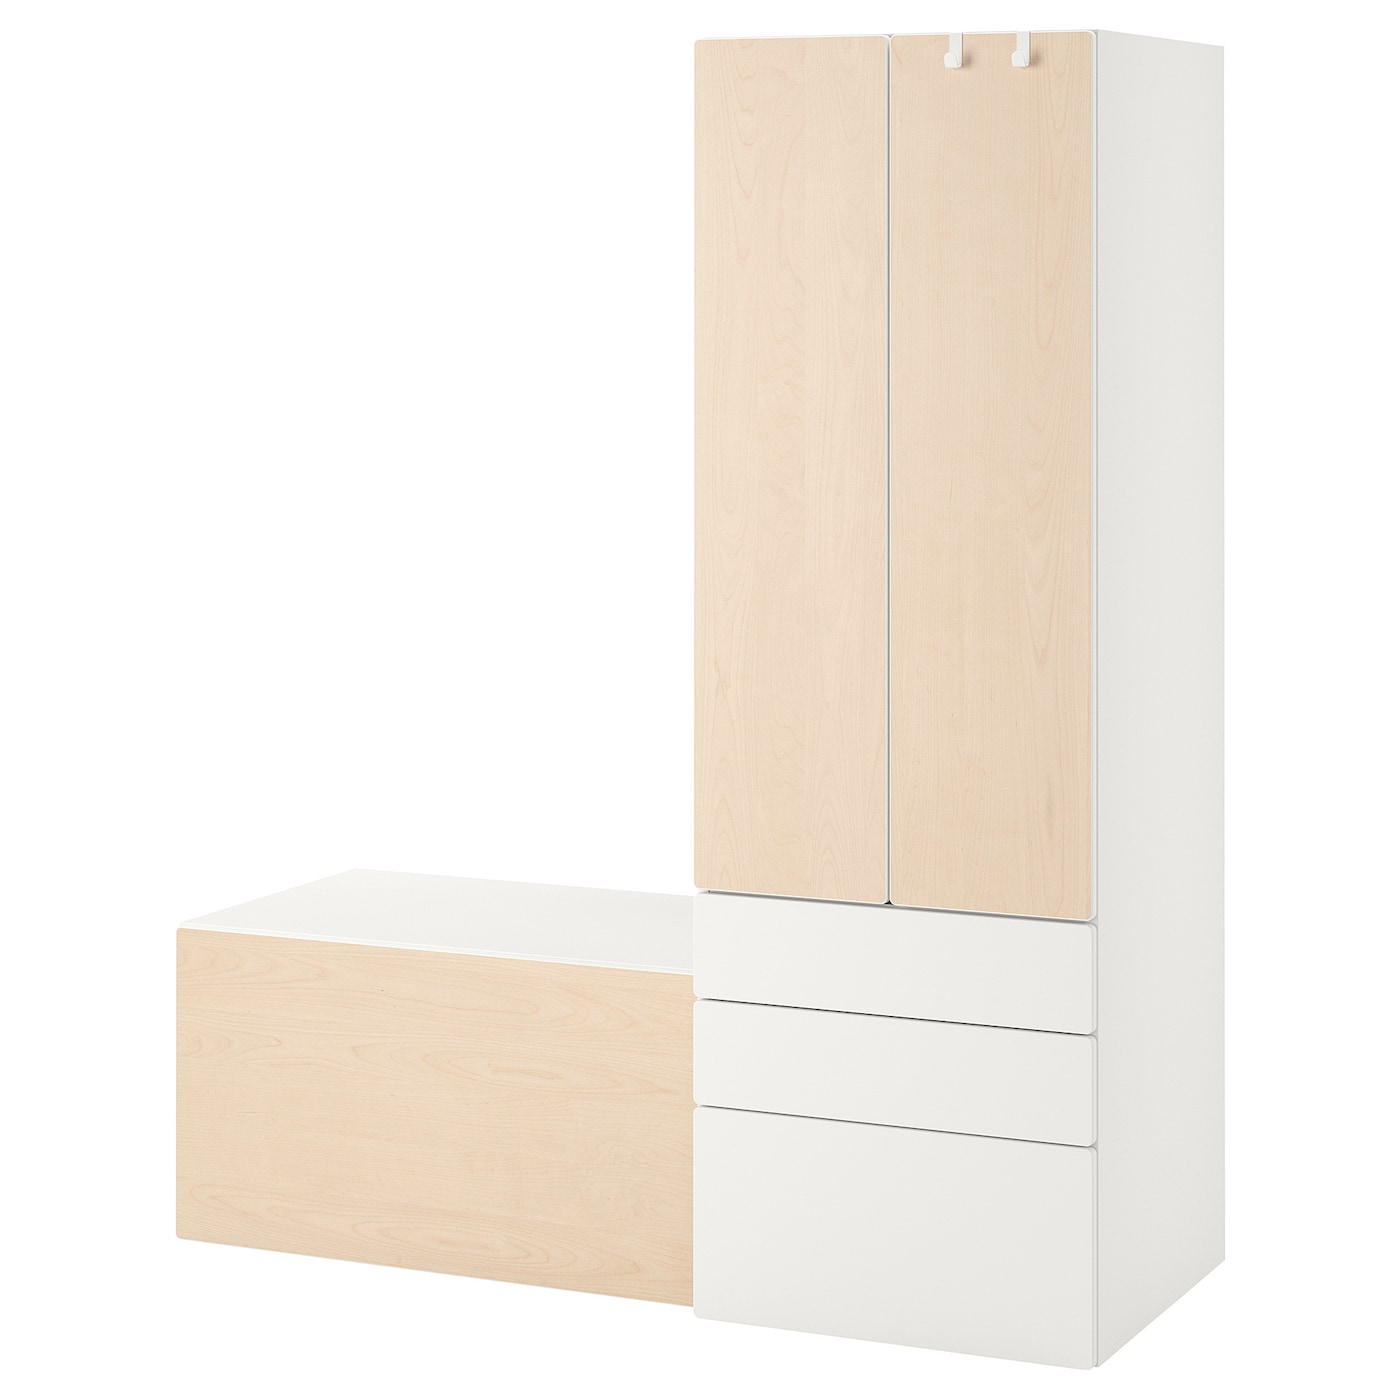 Детская гардеробная комбинация - IKEA PLATSA SMÅSTAD/SMASTAD, 180x57x150см, белый/бежевый, ПЛАТСА СМОСТАД ИКЕА